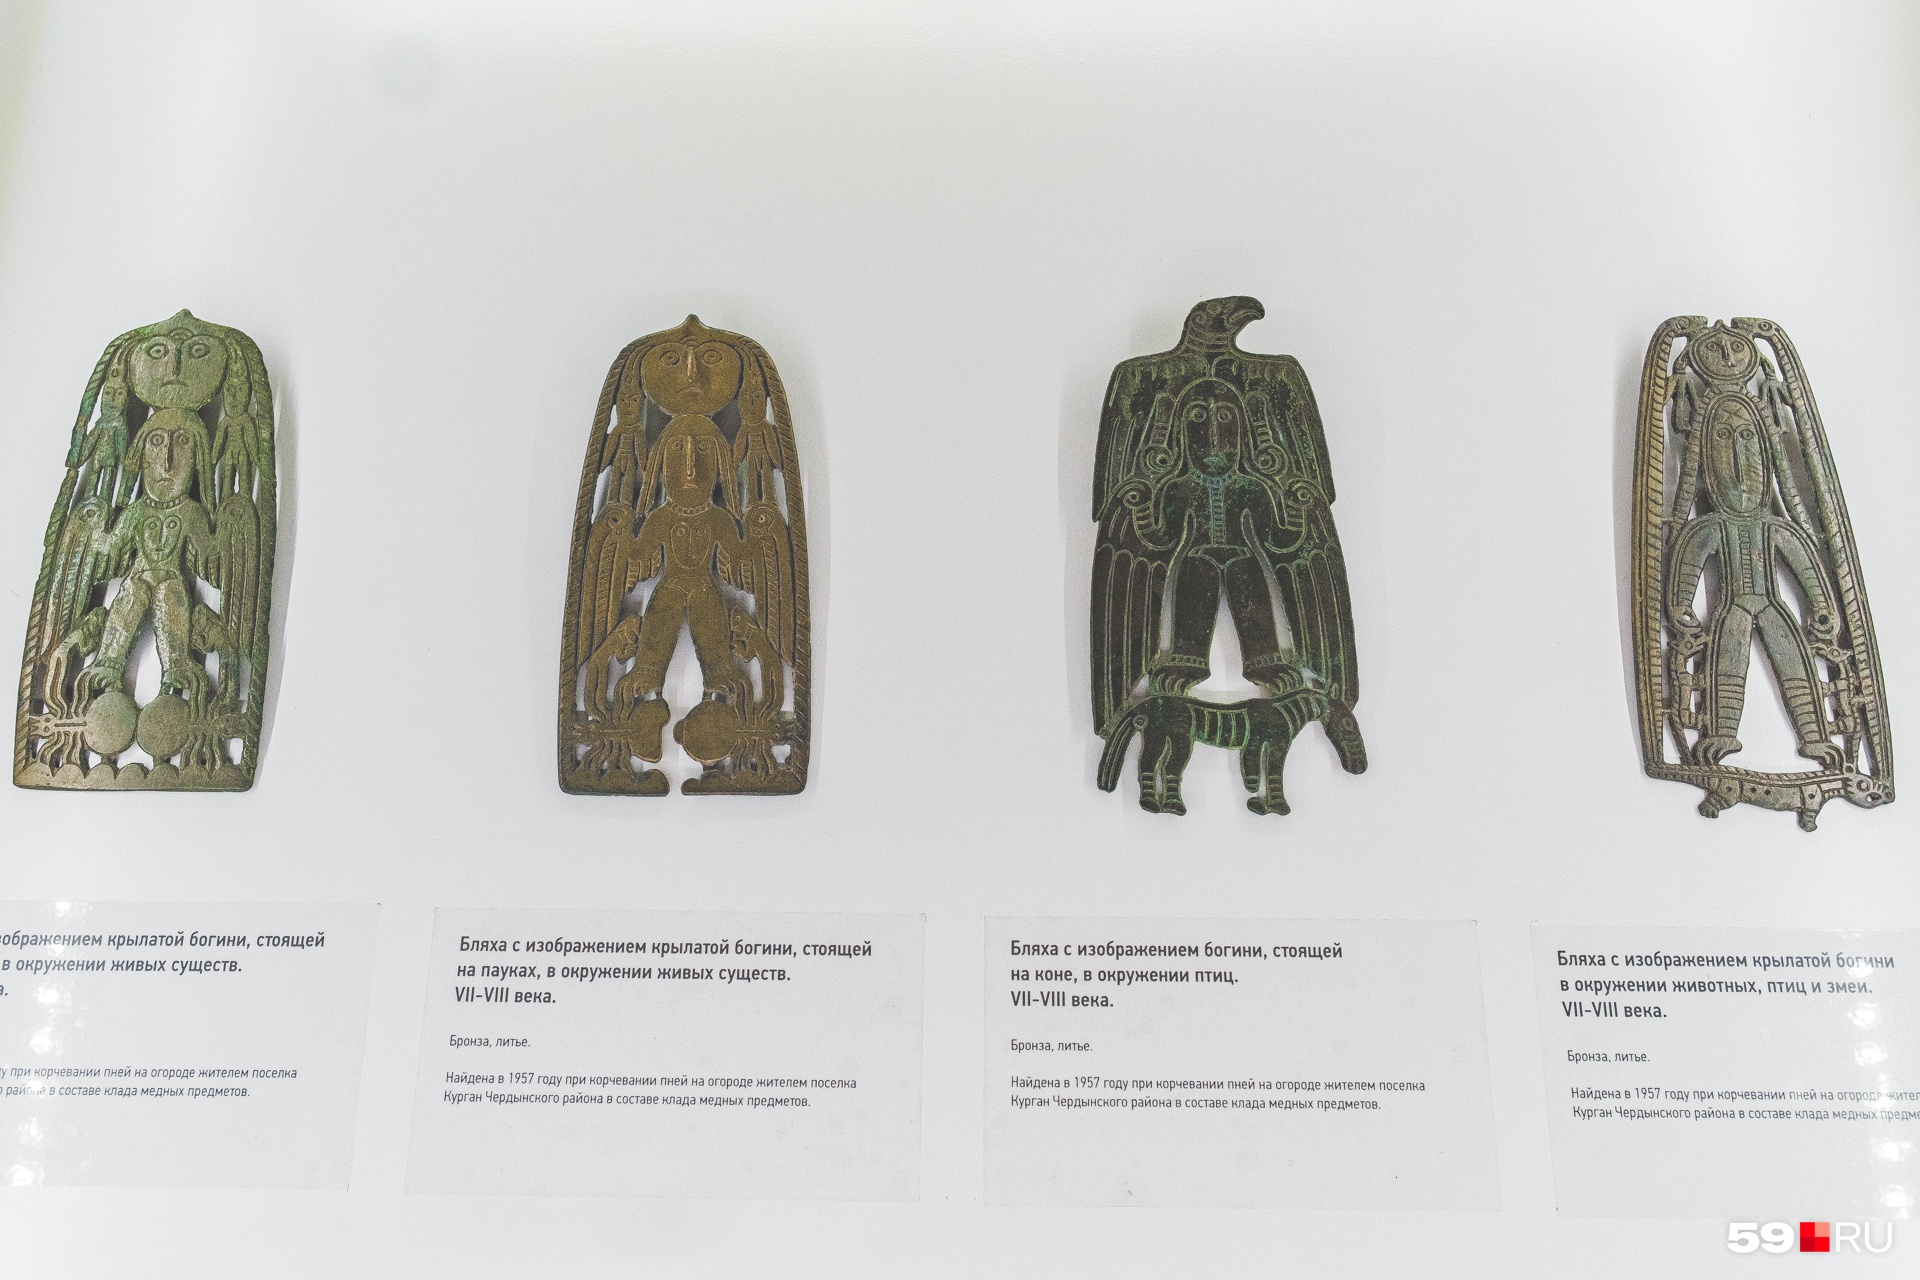 Бляшки с изображением богини, которые нашли в чердынской земле археологи. Многие находки увезены в пермские и московские музеи